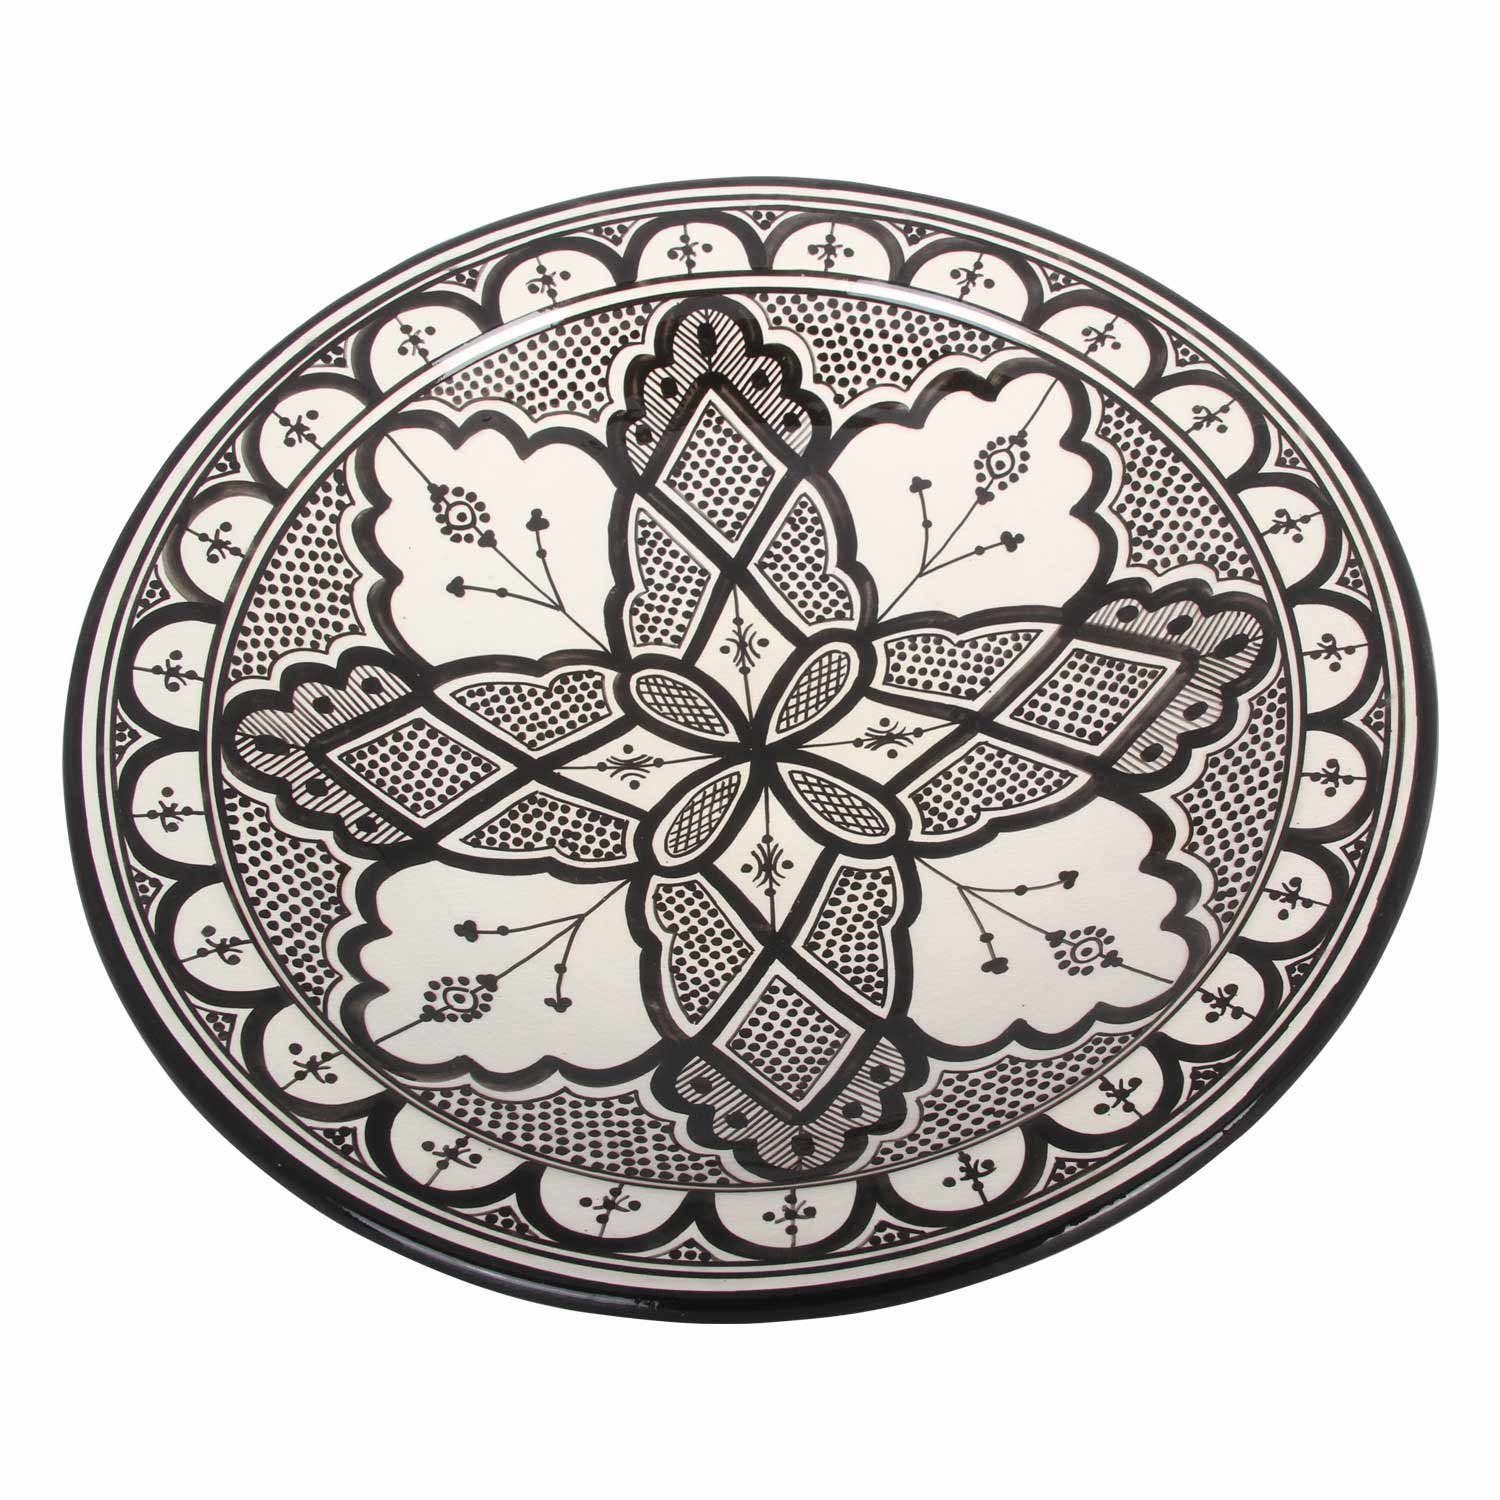 Casa Moro Teller Handbemalte Keramik Schale KS30 mit Ø 41cm rund, Orientalischer Deko Teller schwarz weiß